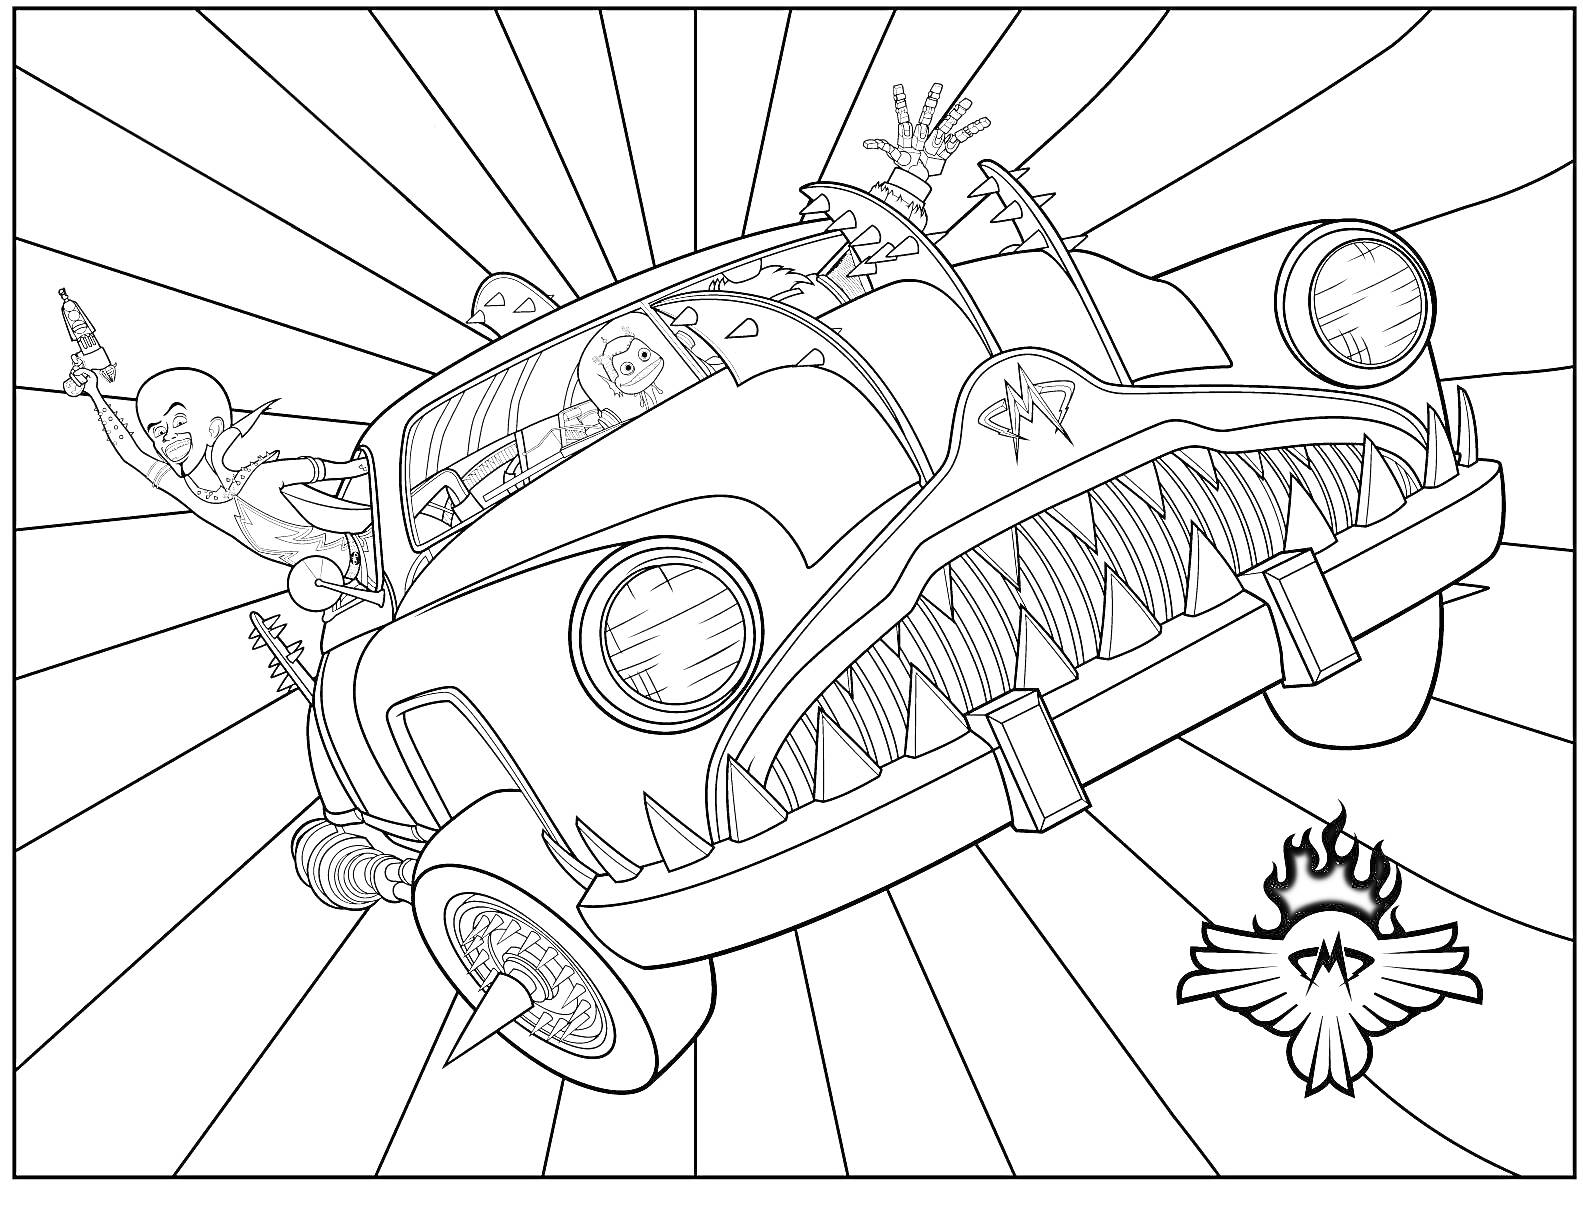 Раскраска Машина будущего с агрессивным дизайном, шипами на колесах и пассажирами, на фоне лучей и эмблемы